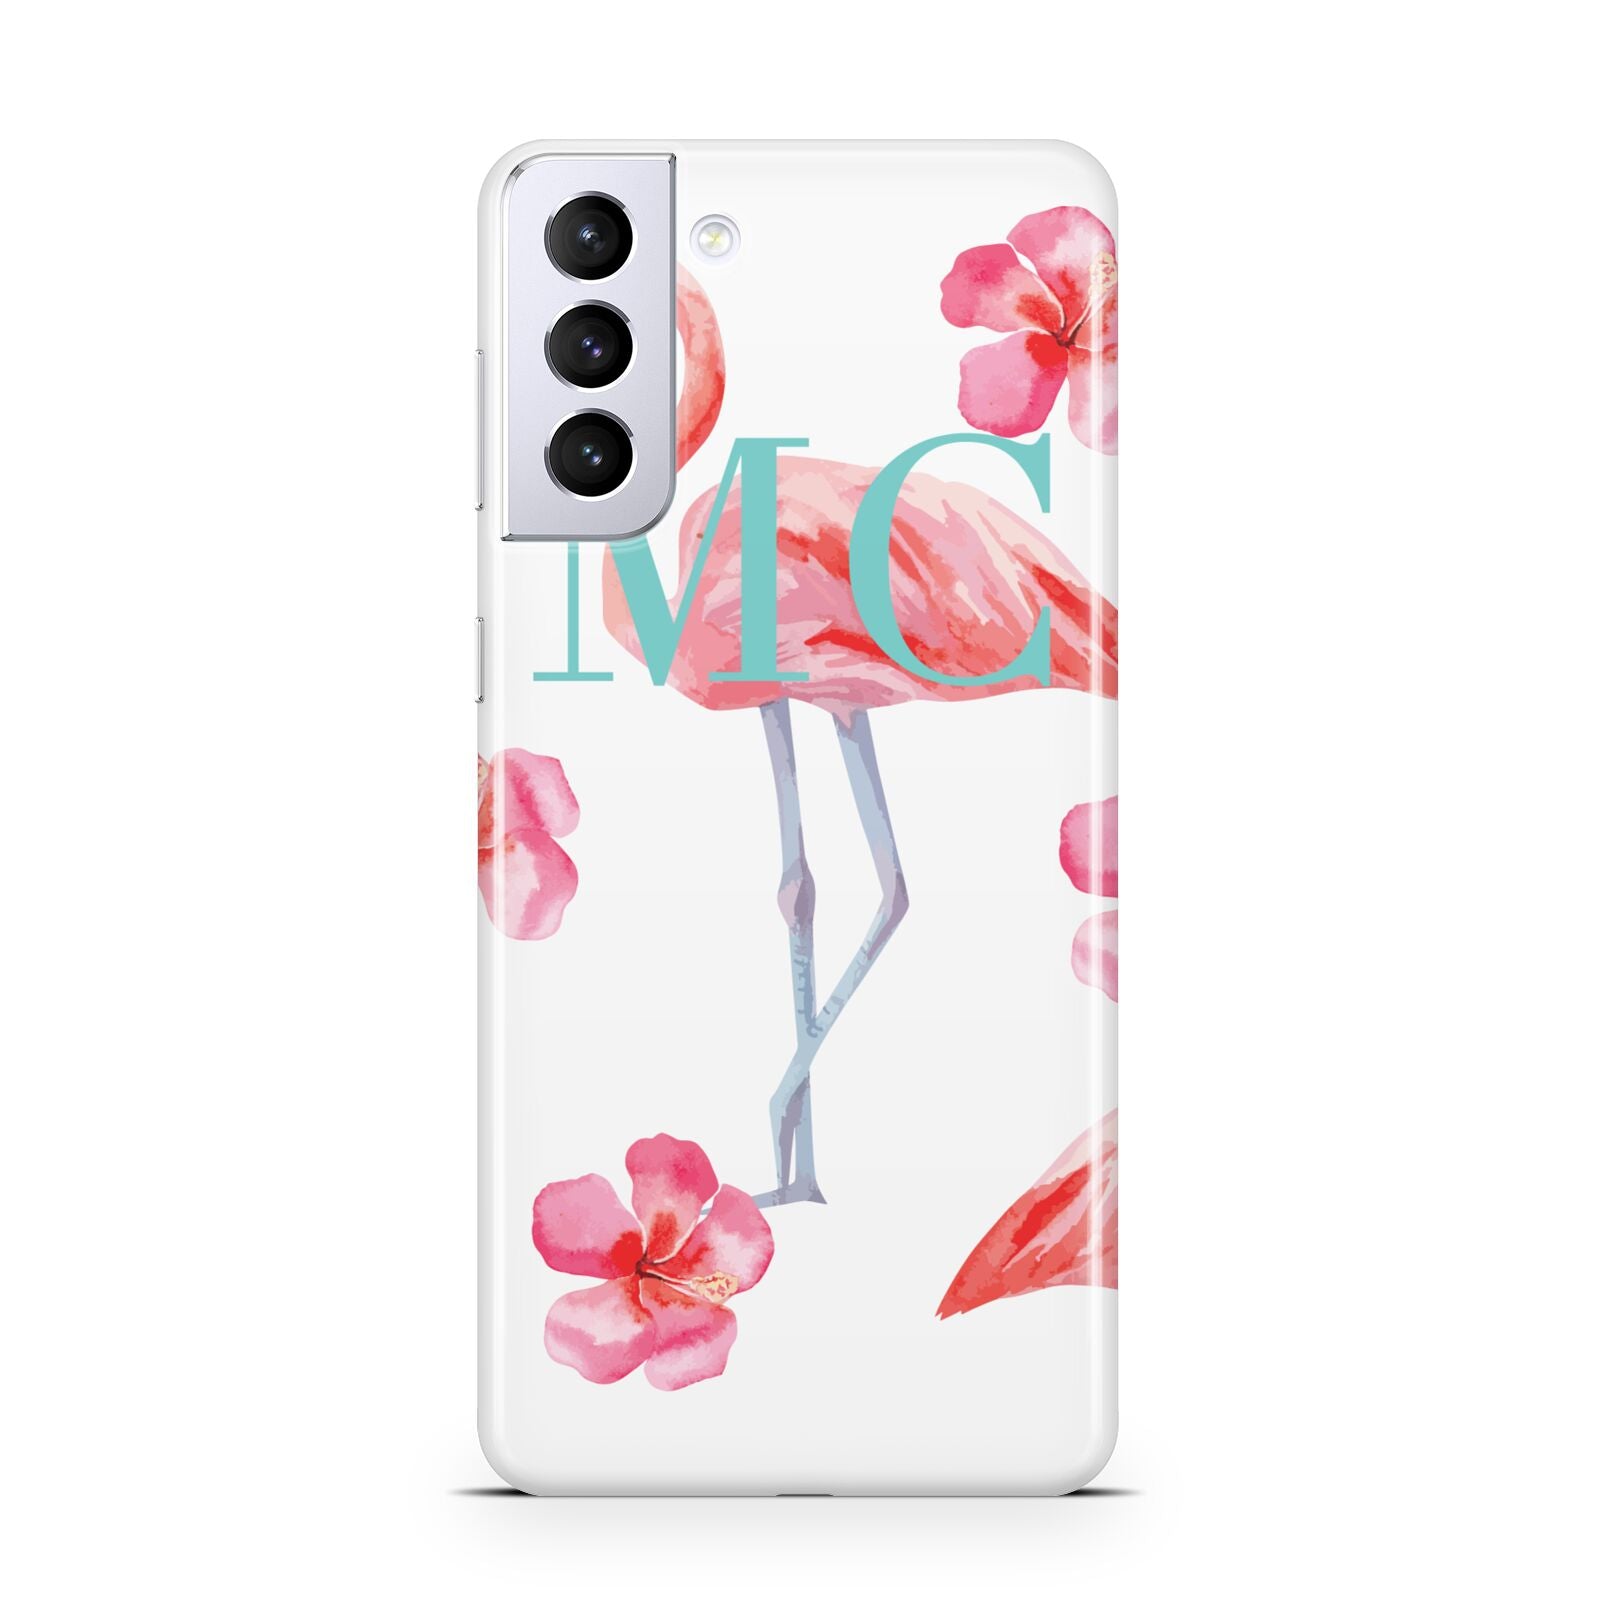 Personalised Initials Flamingo 3 Samsung S21 Plus Phone Case